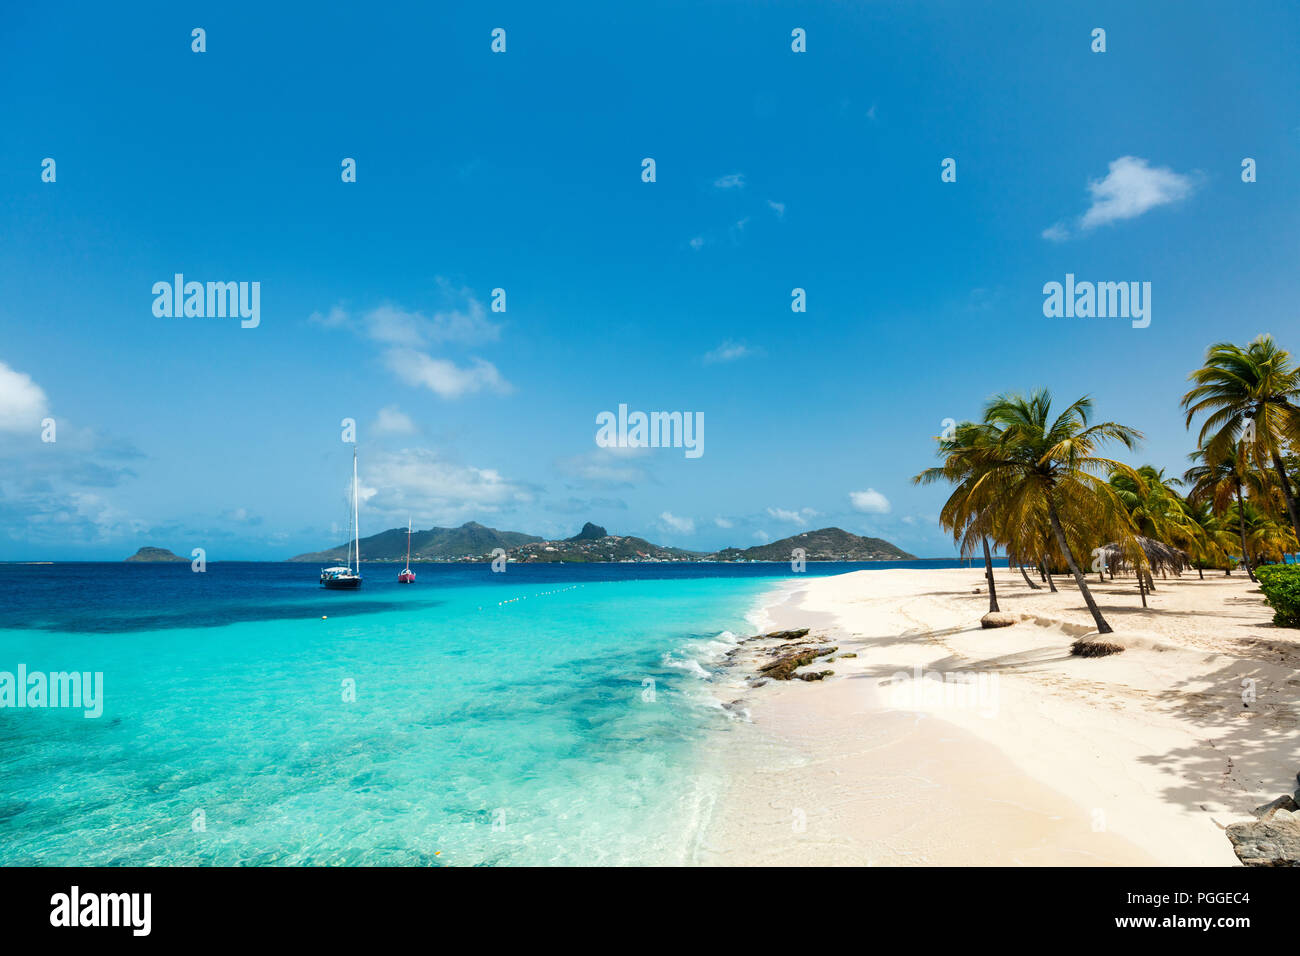 Tropical idílica playa de arena blanca, palmeras y aguas turquesas del mar Caribe agua en la exótica isla de San Vicente y las Granadinas Foto de stock